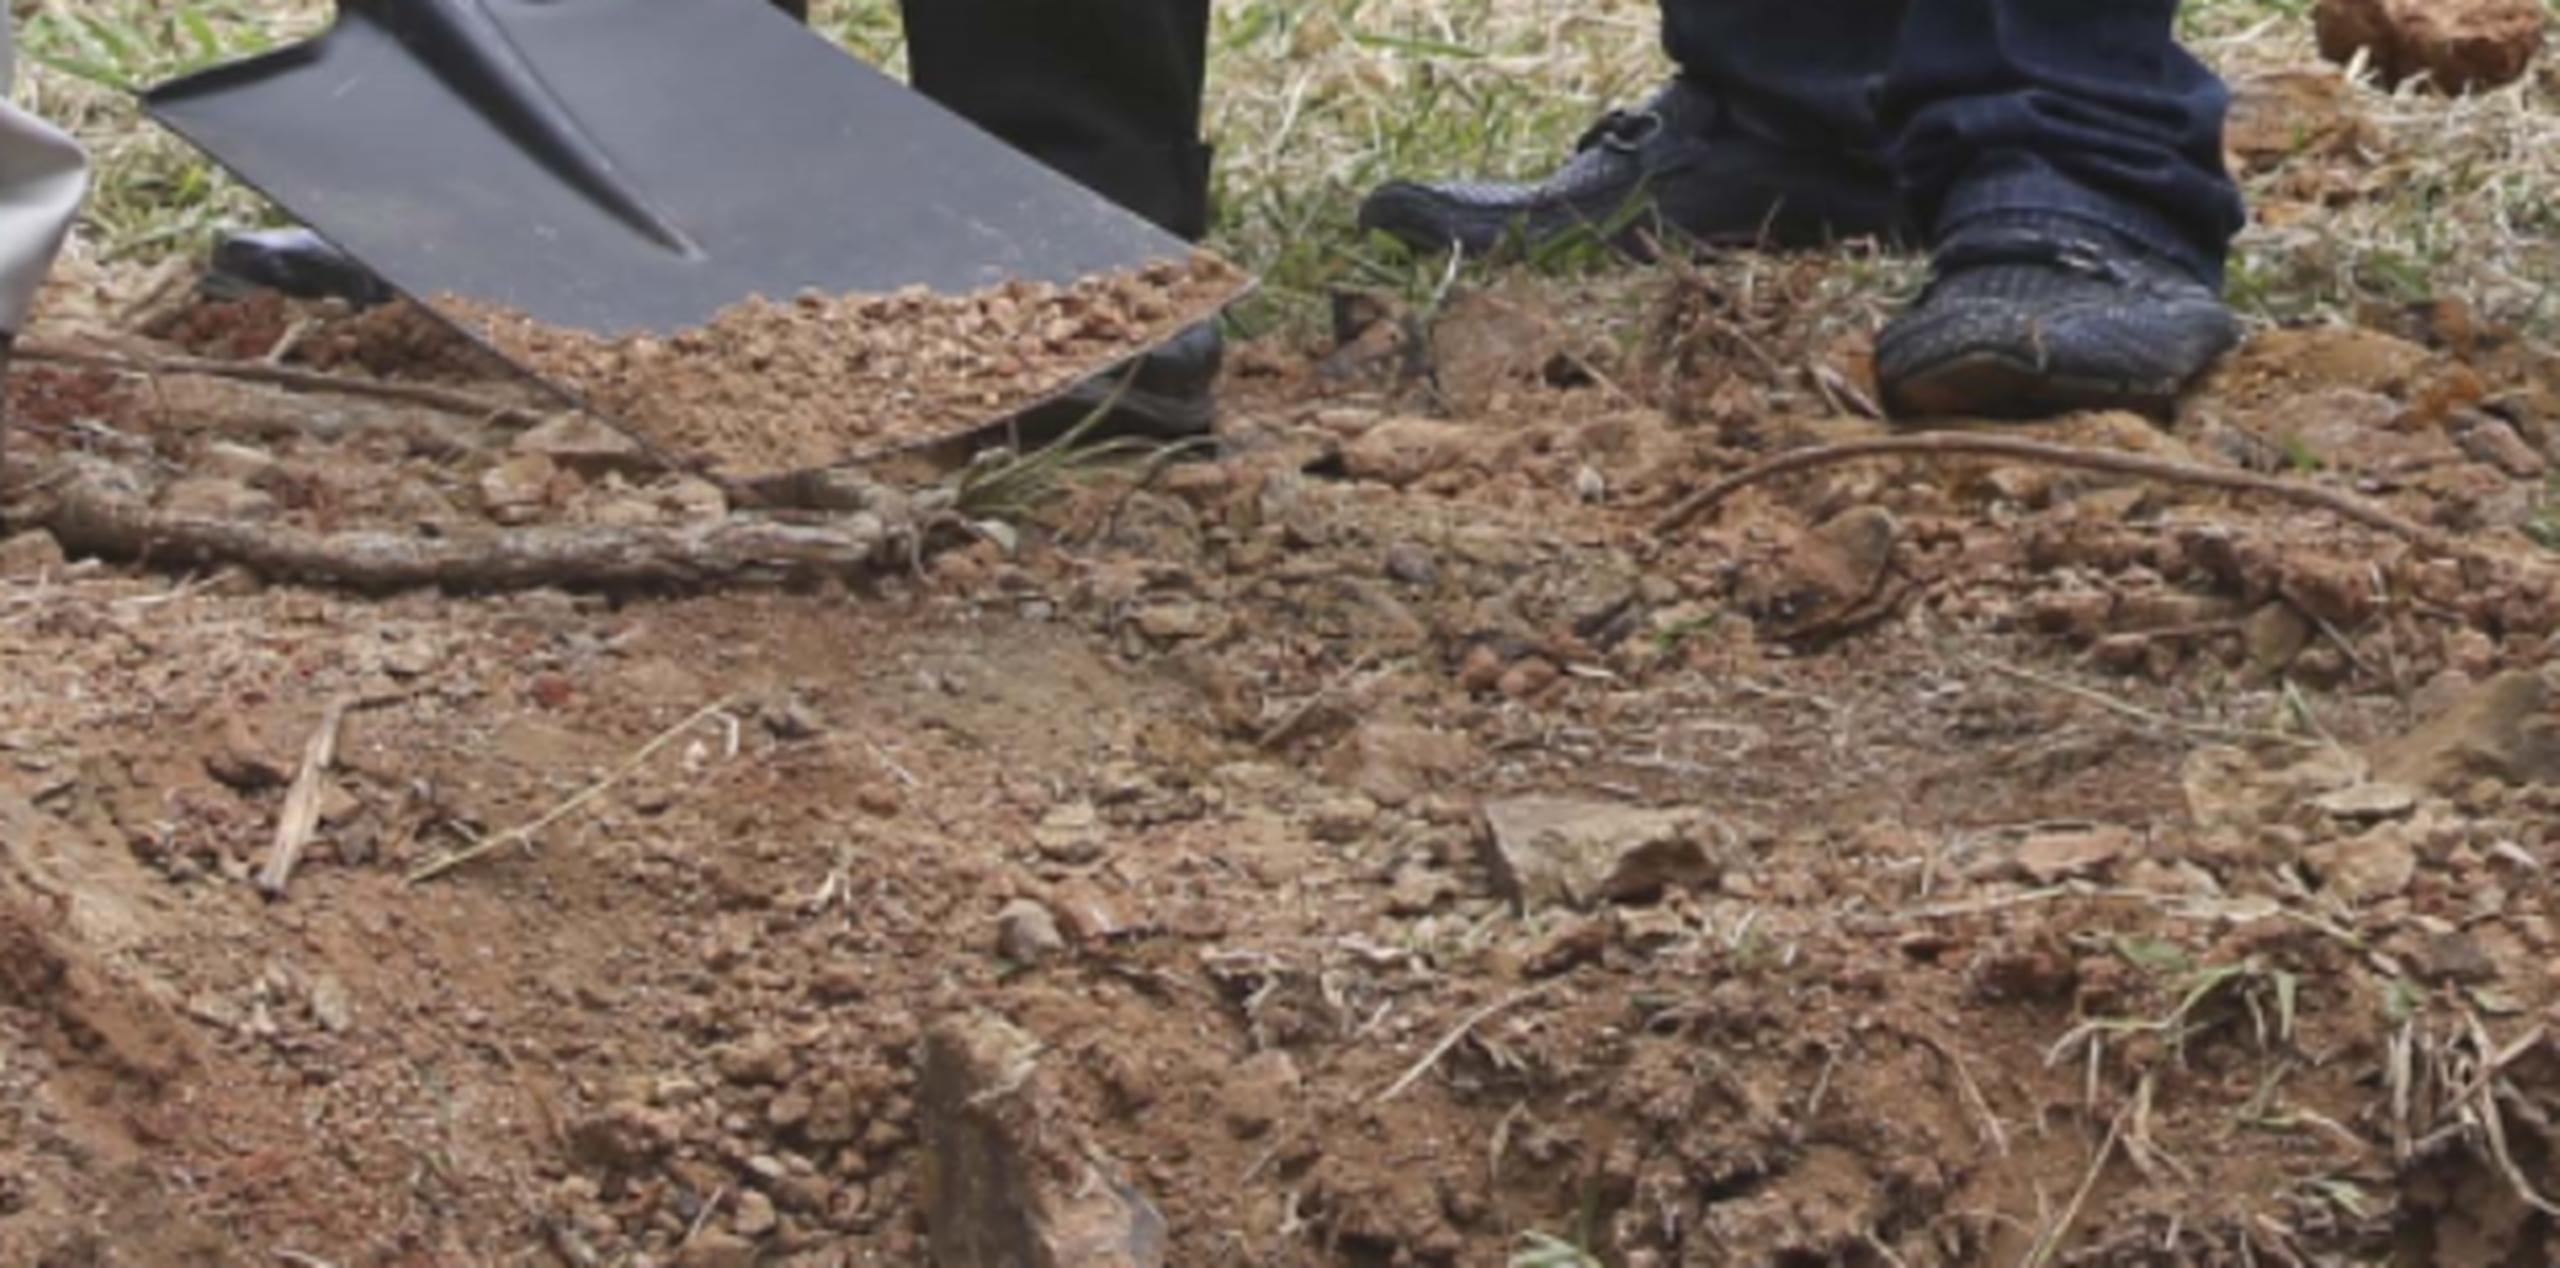 Efectivos de la Policía se personaron en el lugar de los hechos y encontraron los restos de un hombre en avanzado estado de descomposición en una tumba poco profunda, recogió el diario Orlando Sentinel. (Archivo)